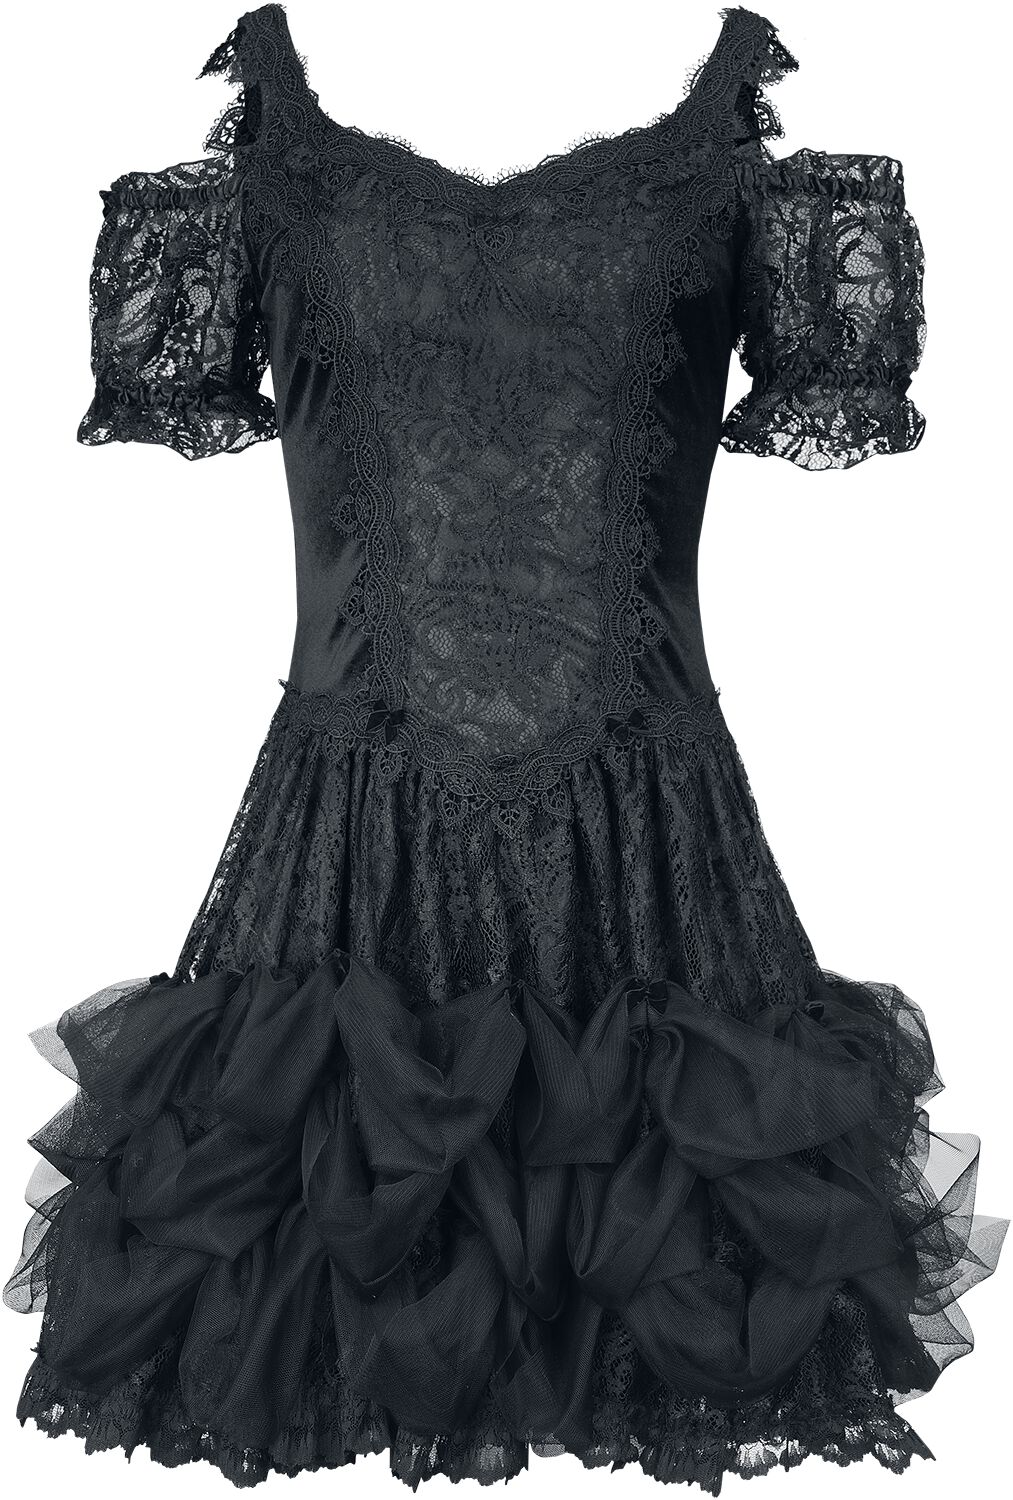 Robe courte Gothic de Sinister Gothic - Robe Gothique - S à XXL - pour Femme - noir